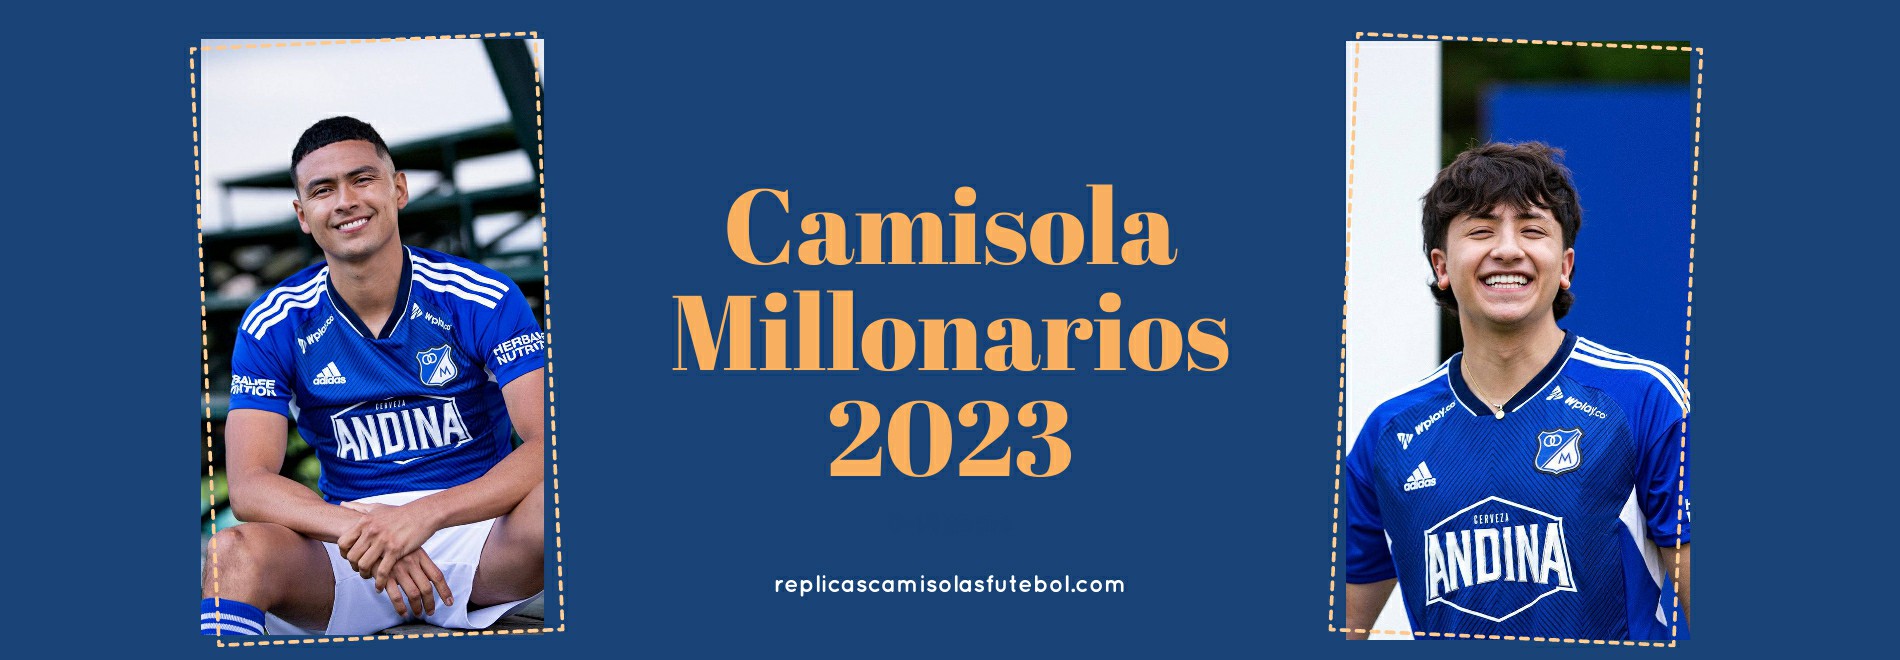 Camisola Millonarios 2023-2024